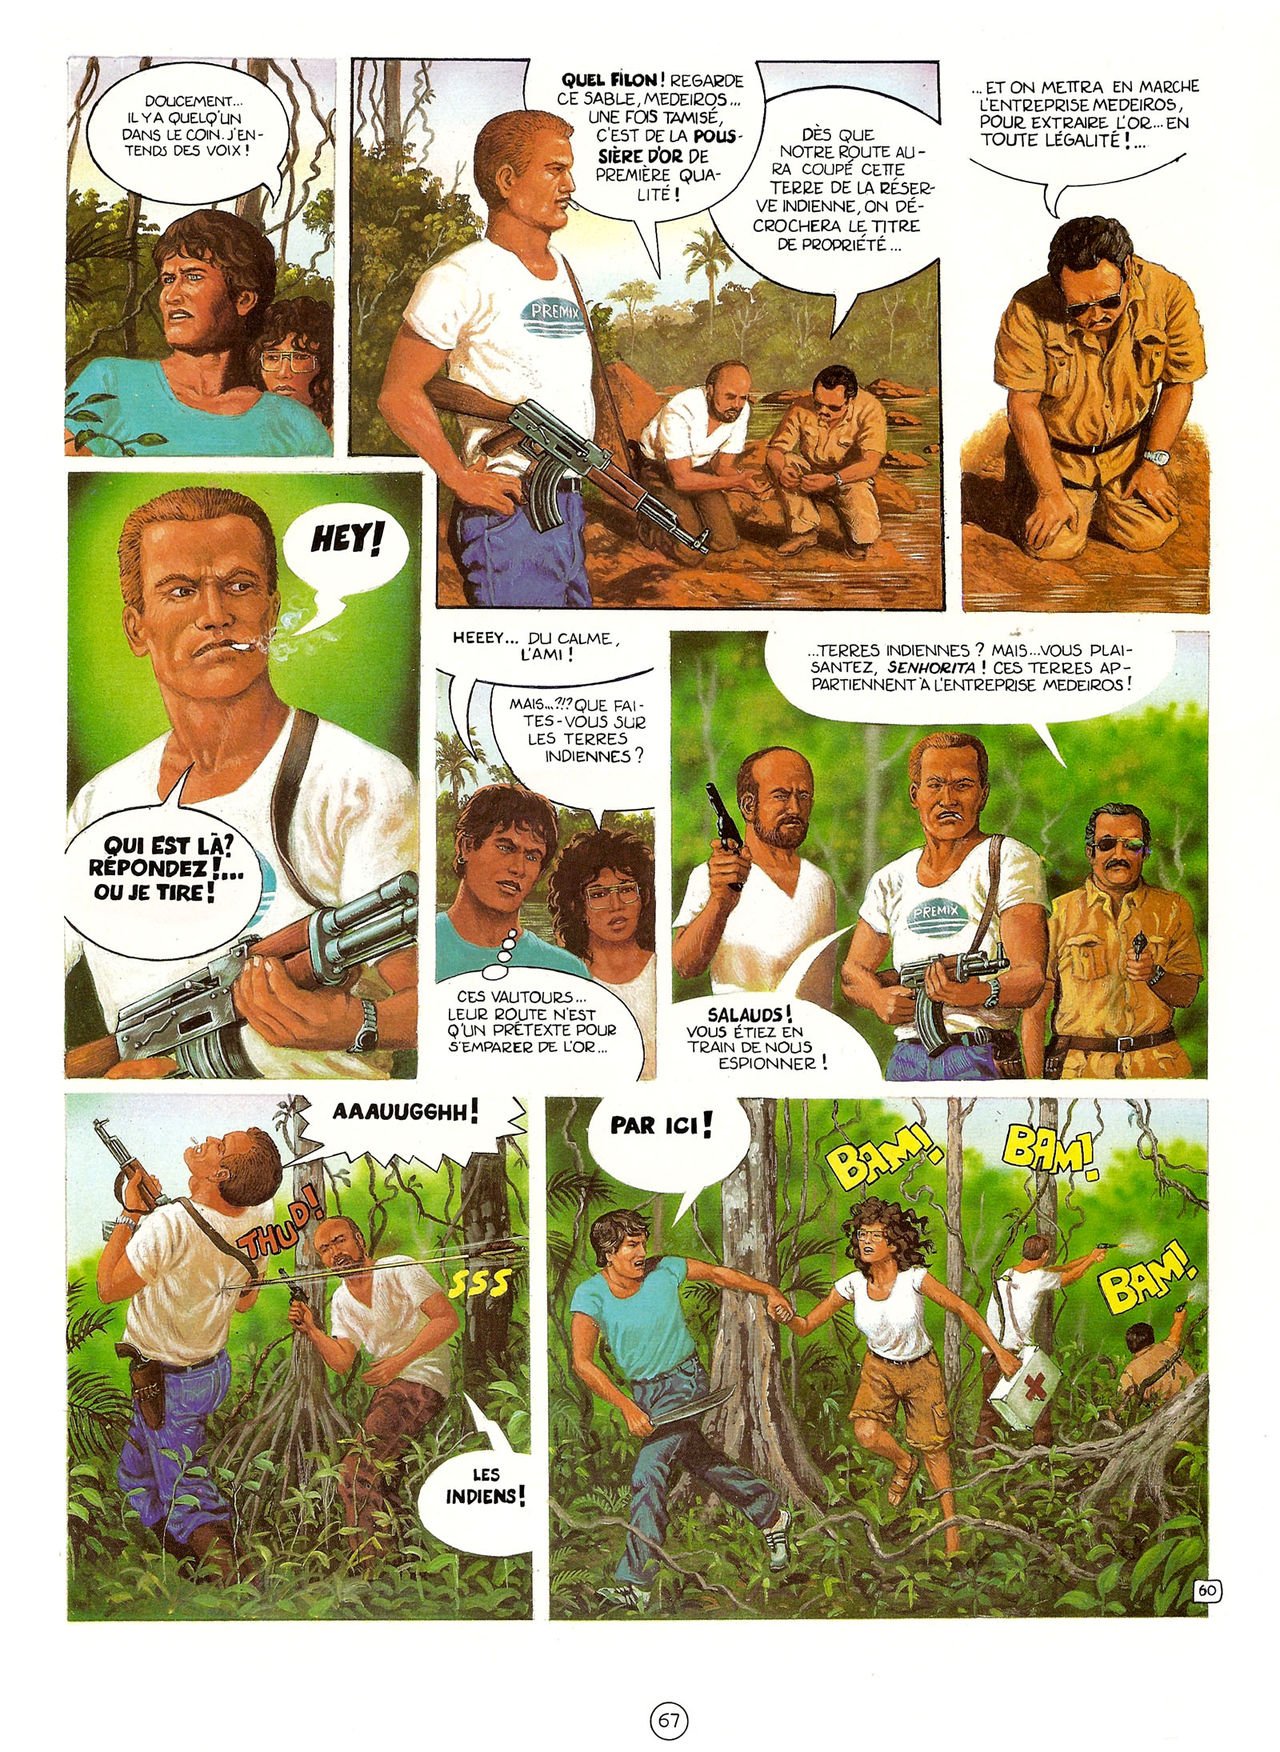 Les Aventures de Vic Voyage 05 - Brazil! numero d'image 67